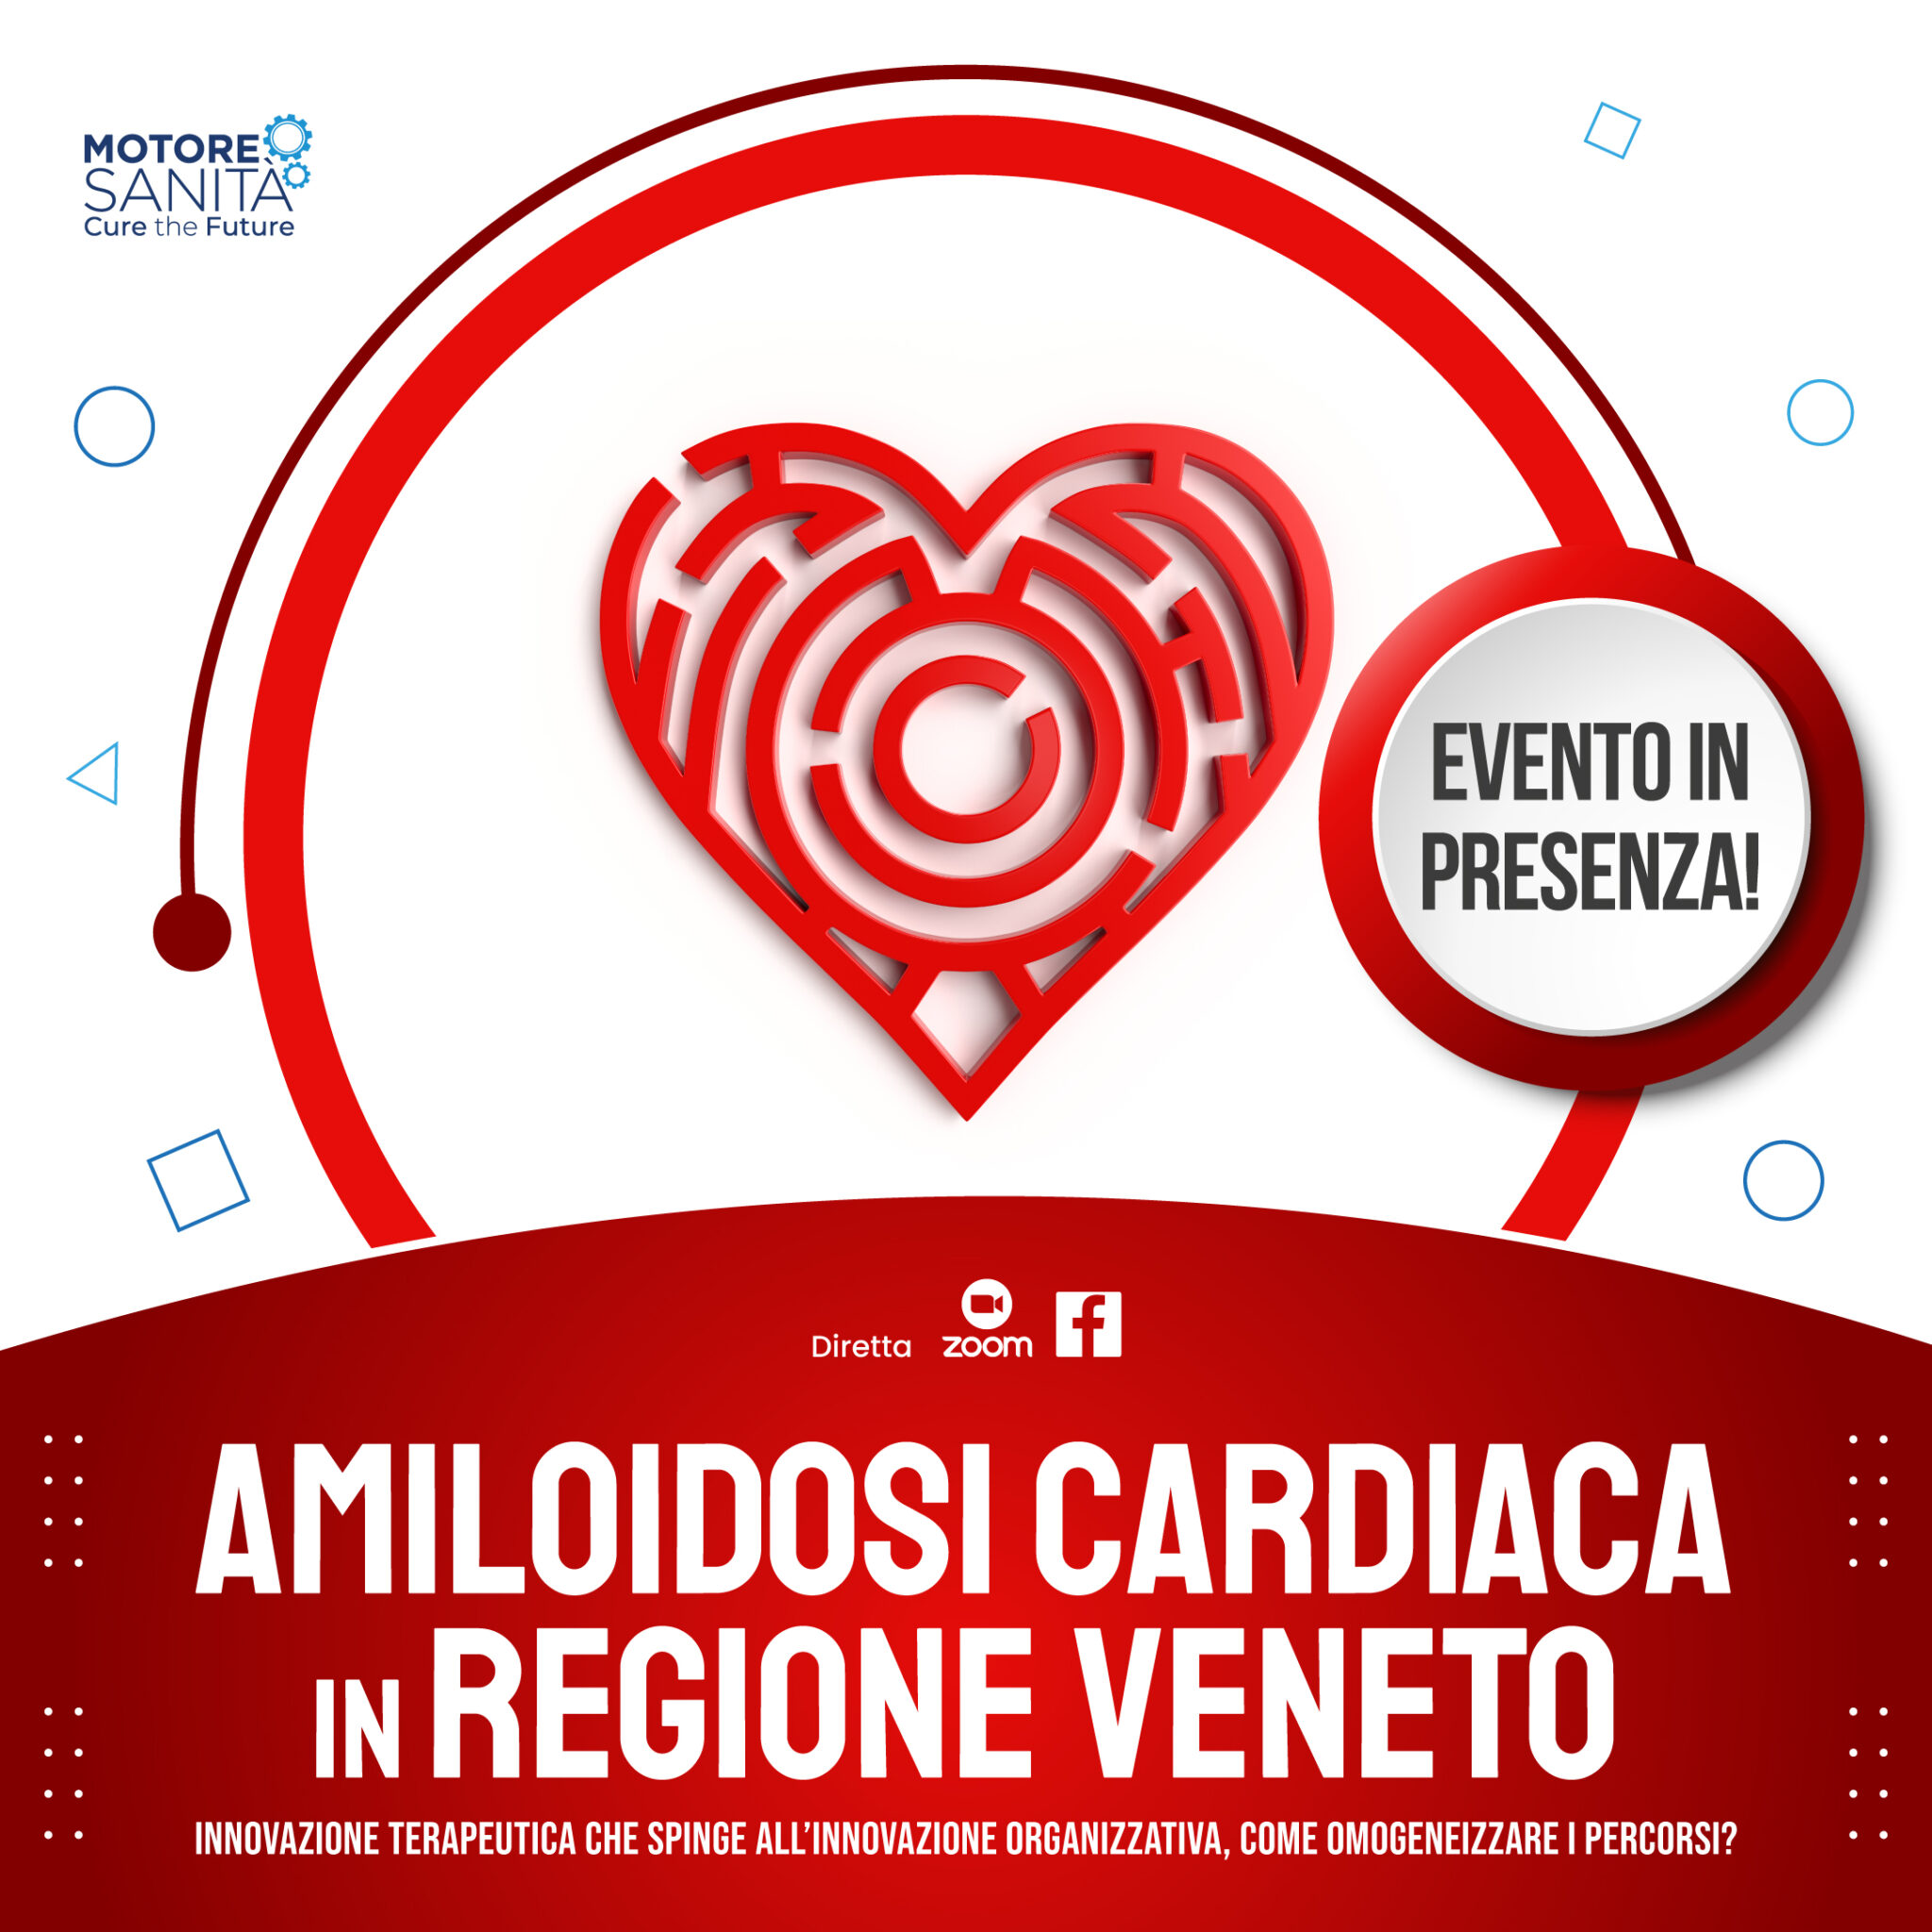 Amiloidosi Cardiaca in Regione Veneto Innovazione terapeutica che spinge all’innovazione organizzativa, come omogeneizzare i percorsi?